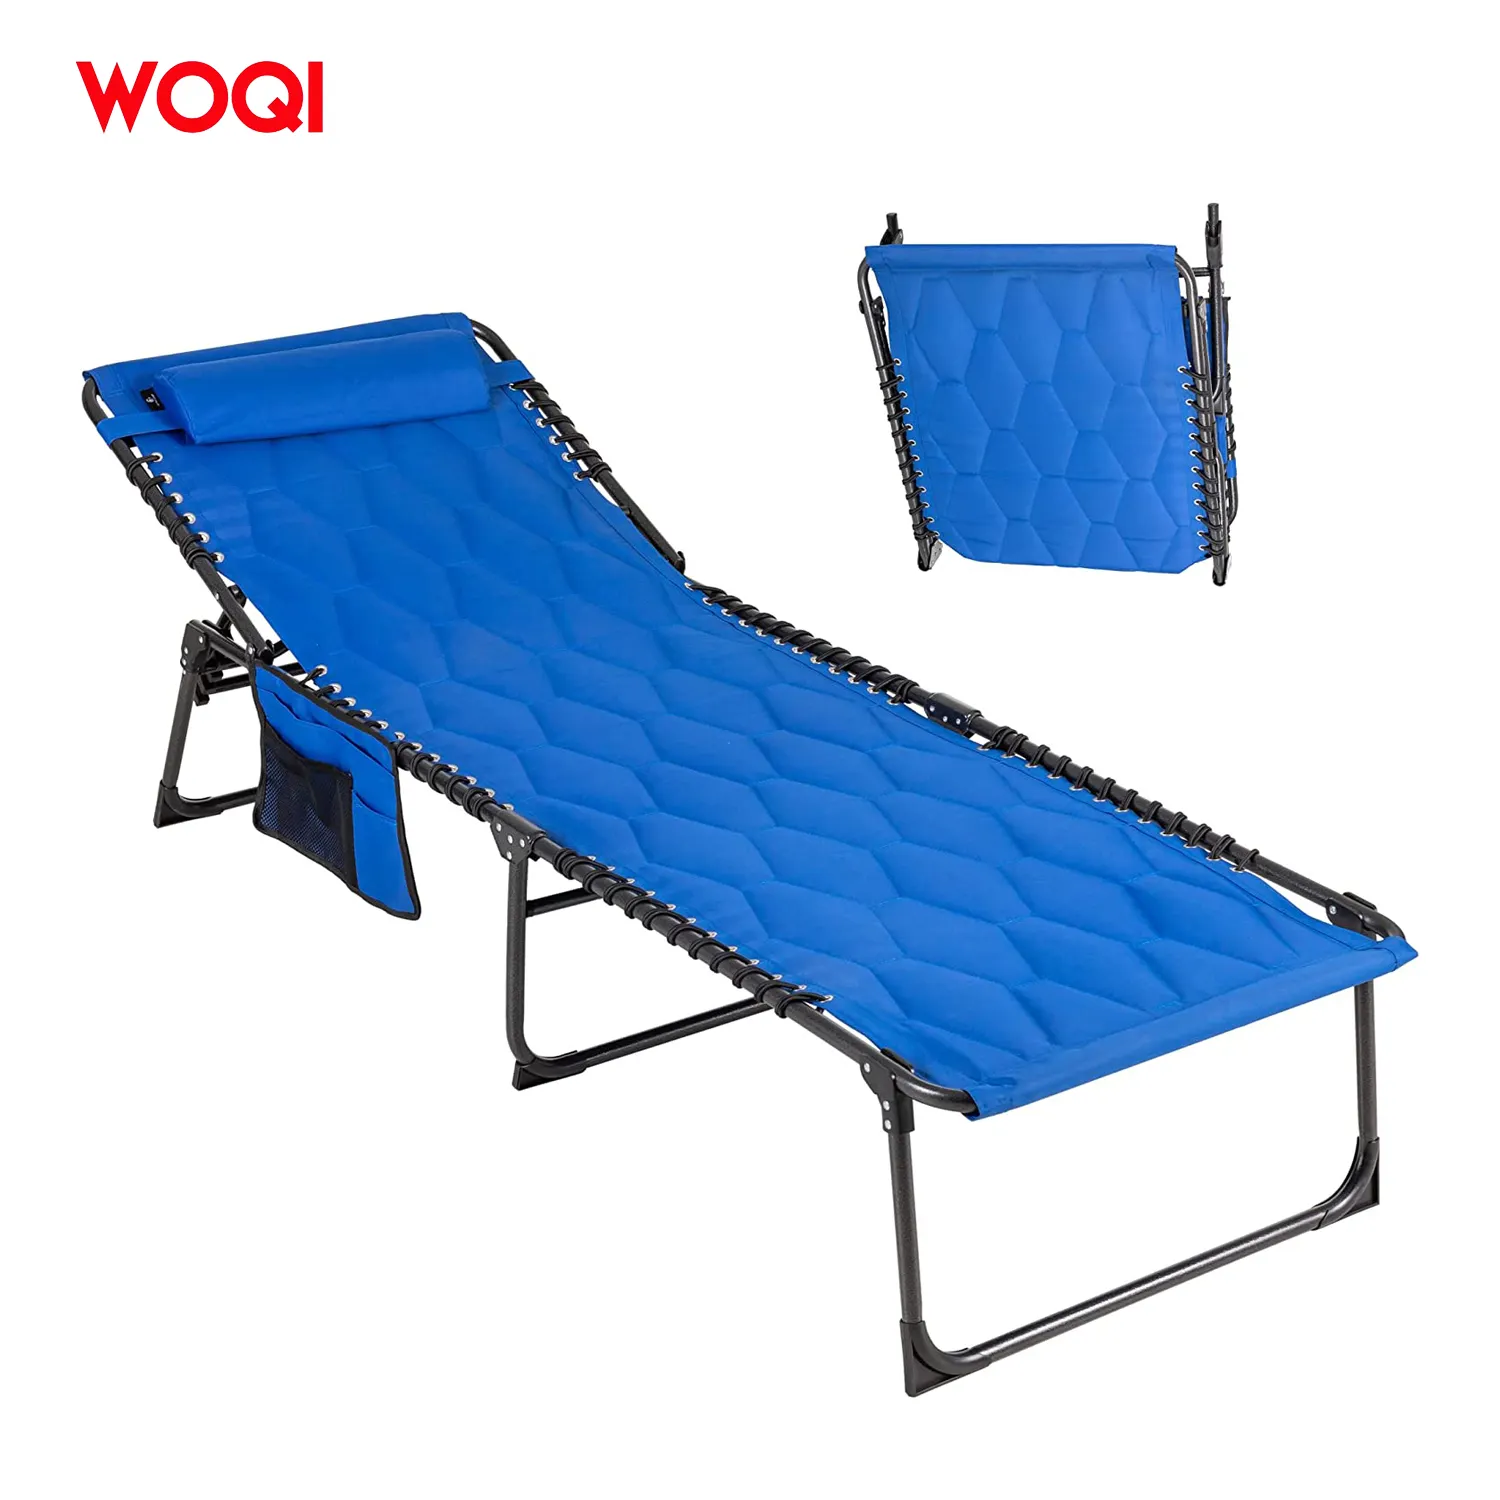 WOQI taşınabilir kamp karyolası seyahat katlanır yatak uzanmış şezlong açık uyku katlanır sandalye kamp seyahat karyolası